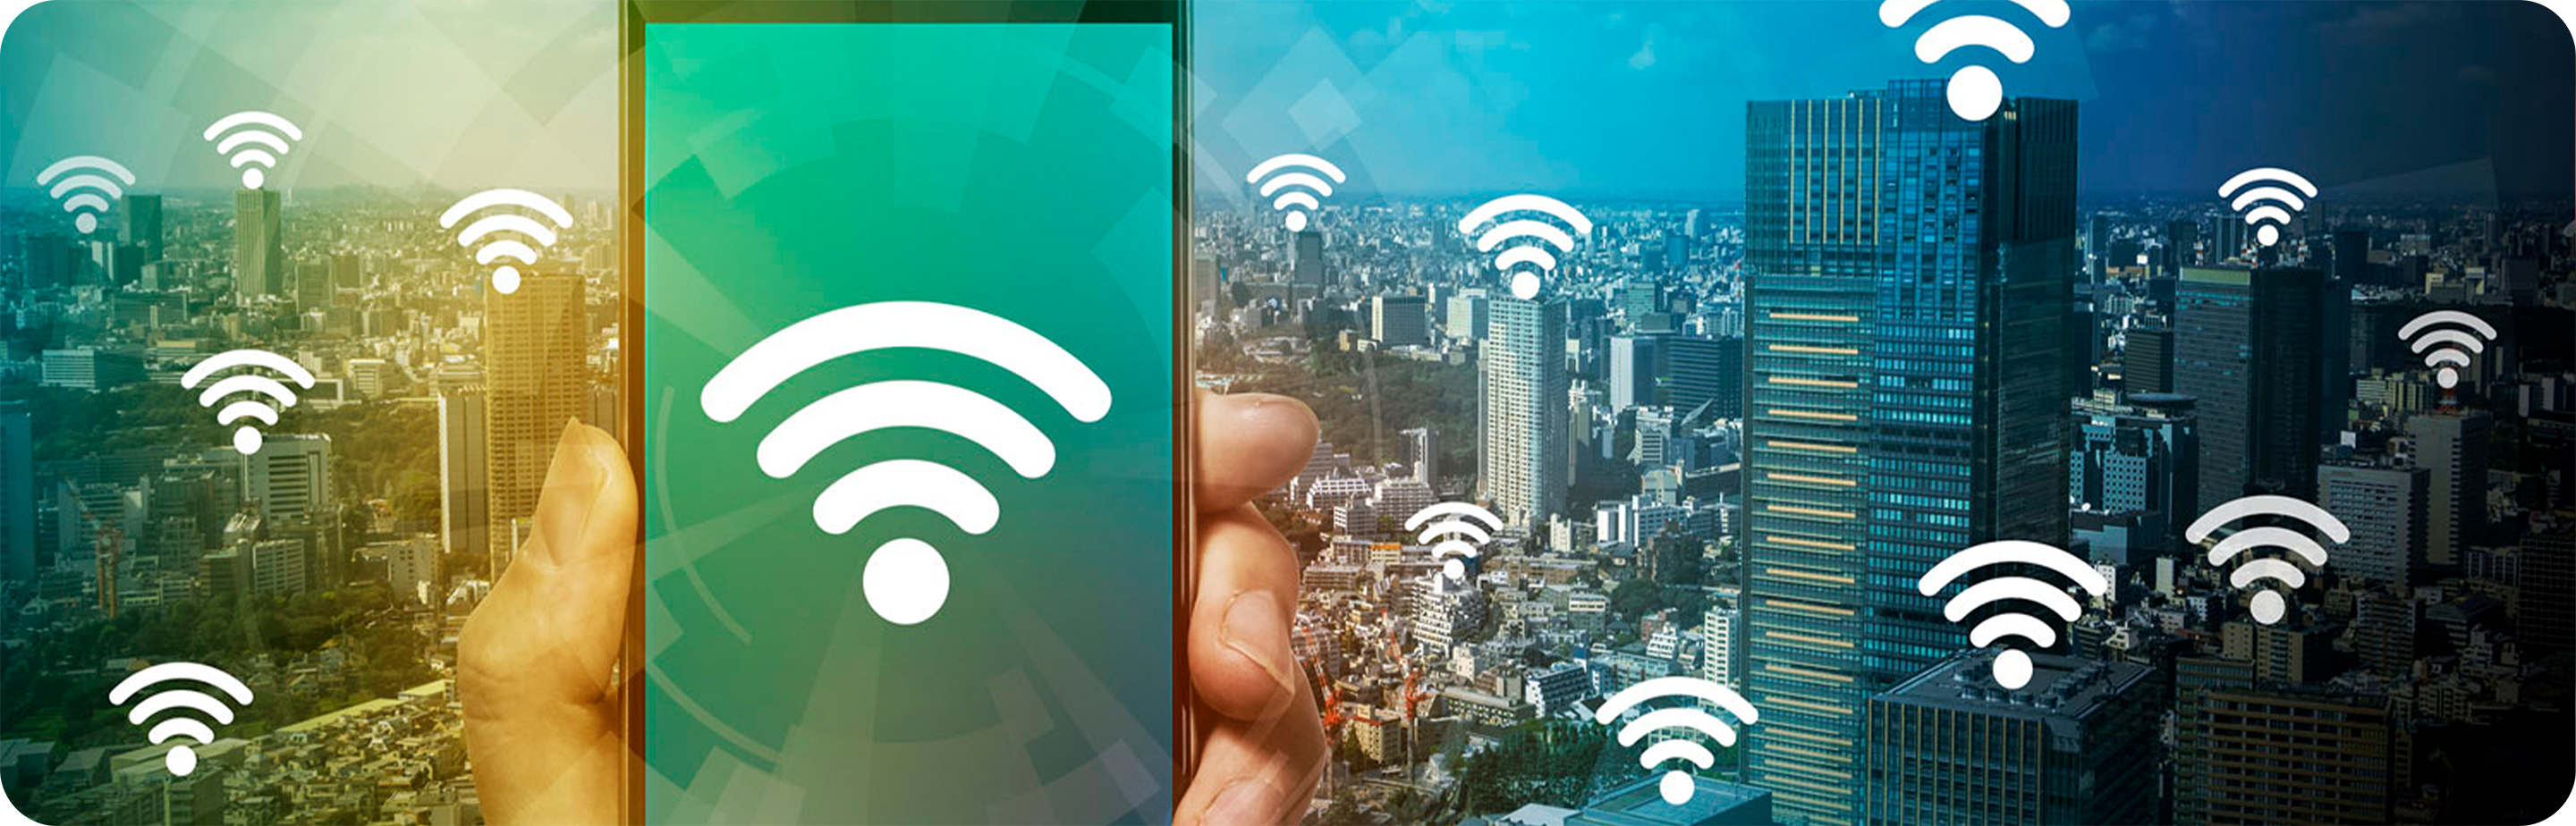 Fotografia de celular, com ícone de Wi-Fi, em frente a prédios corporativos com ícones de Wi-Fi flutuantes